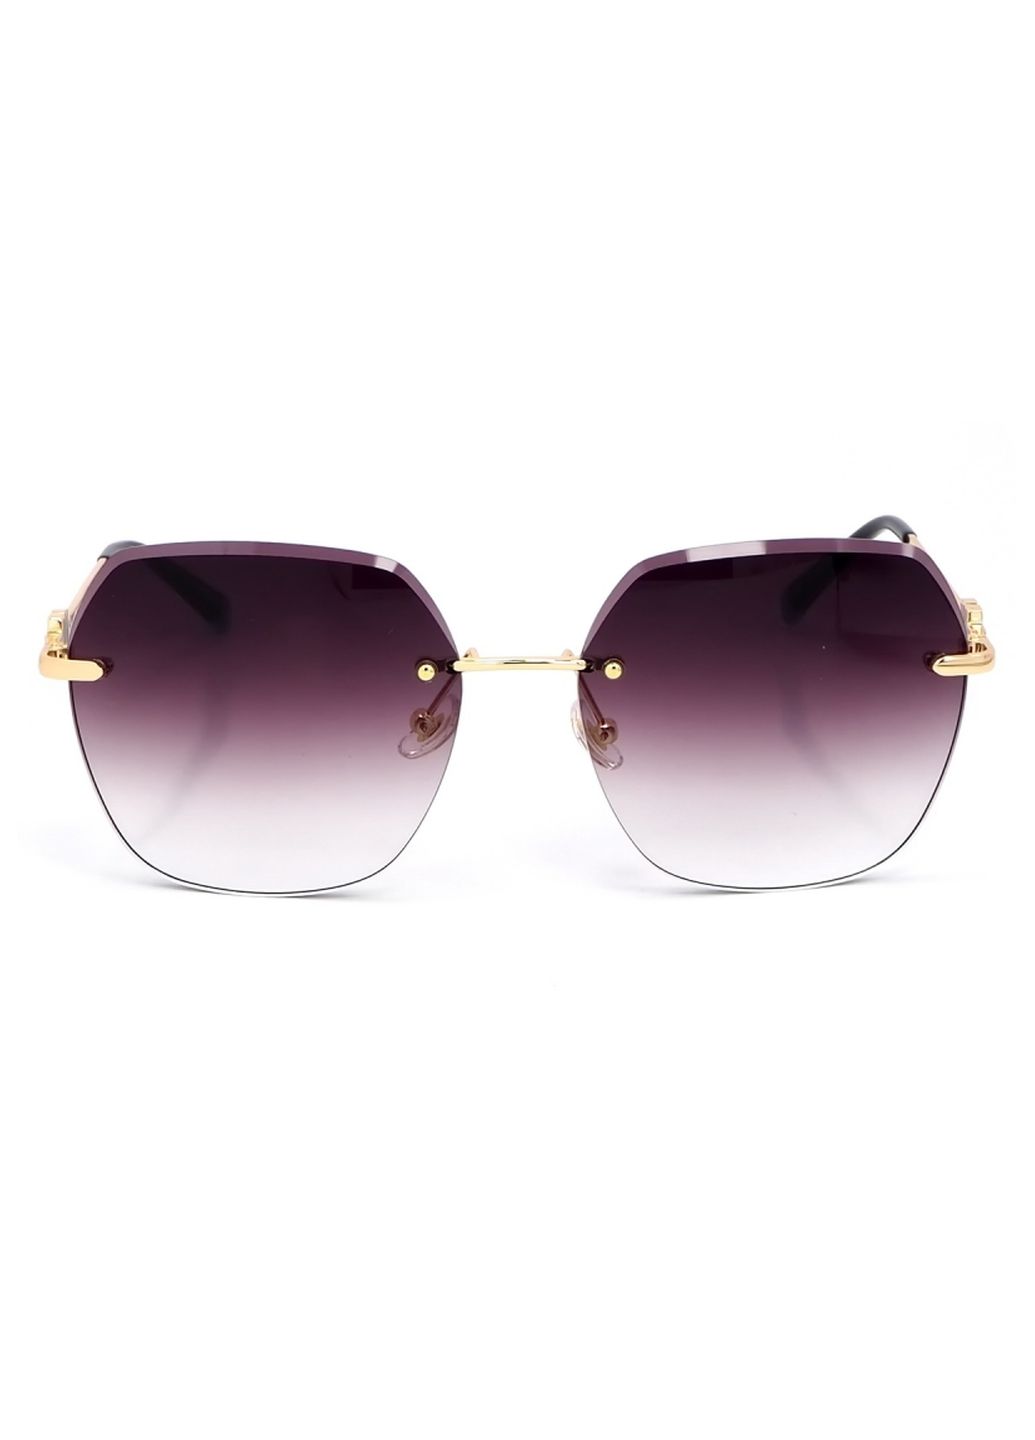 Купить Женские солнцезащитные очки Merlini с поляризацией S31837 117099 - Золотистый в интернет-магазине